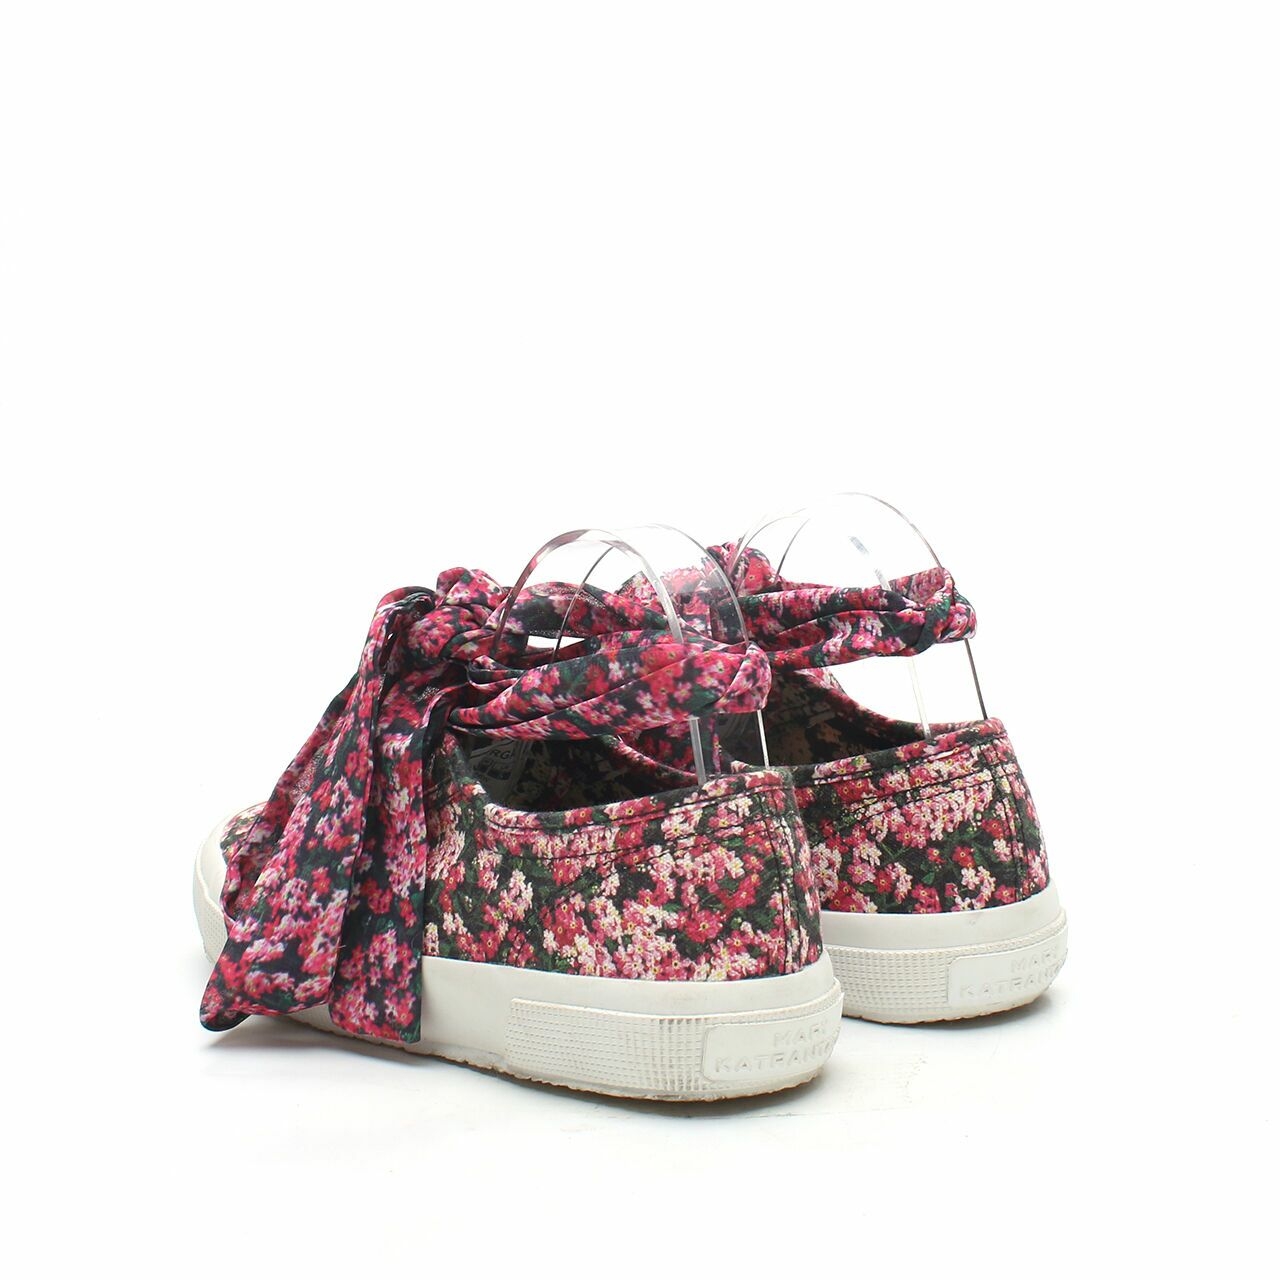 Superga x Mary Katrantzou Multi Floral Sneakers